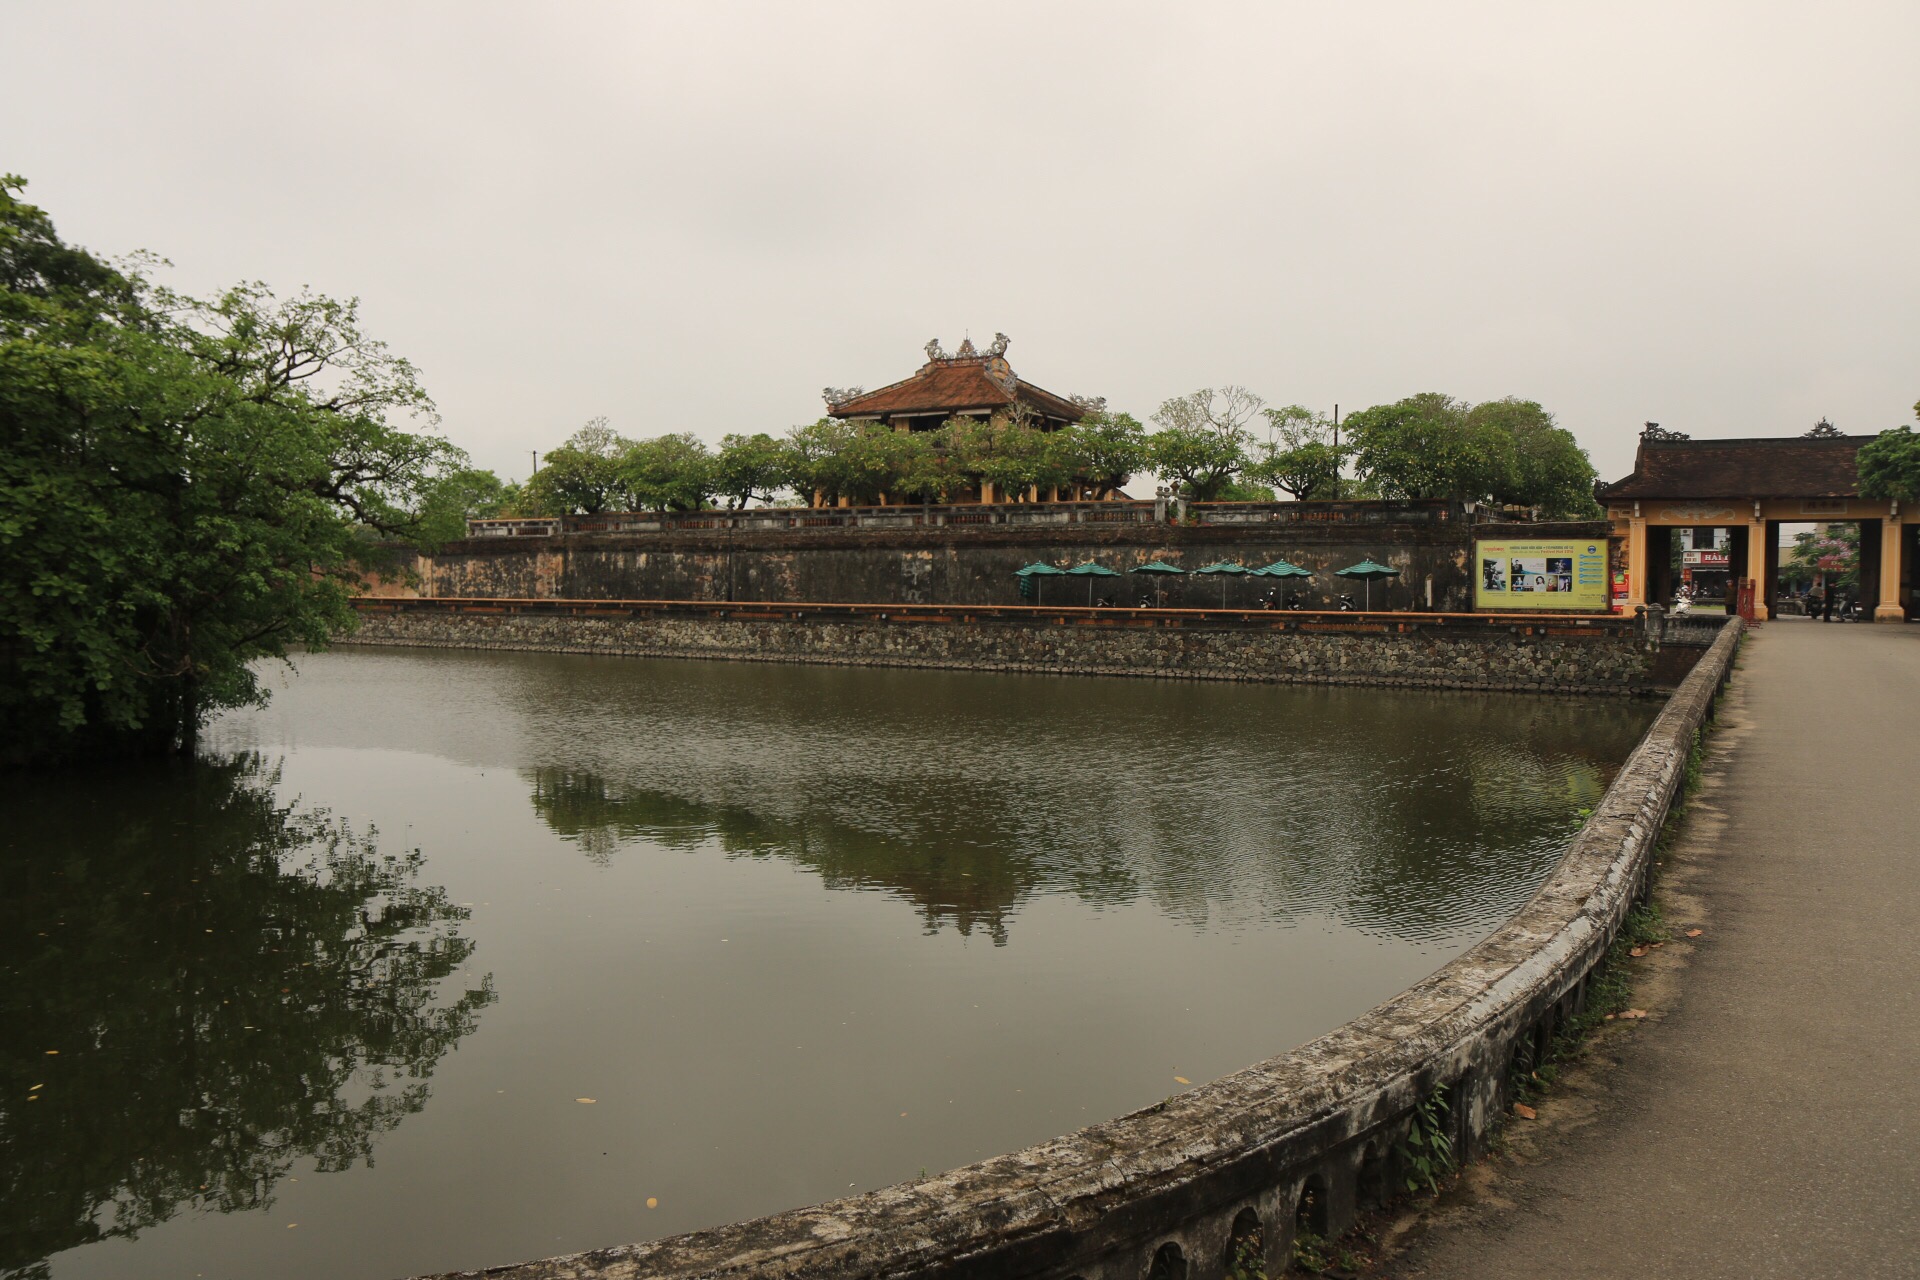 Das nördliche Tor der Kaiserstadt von Hue.